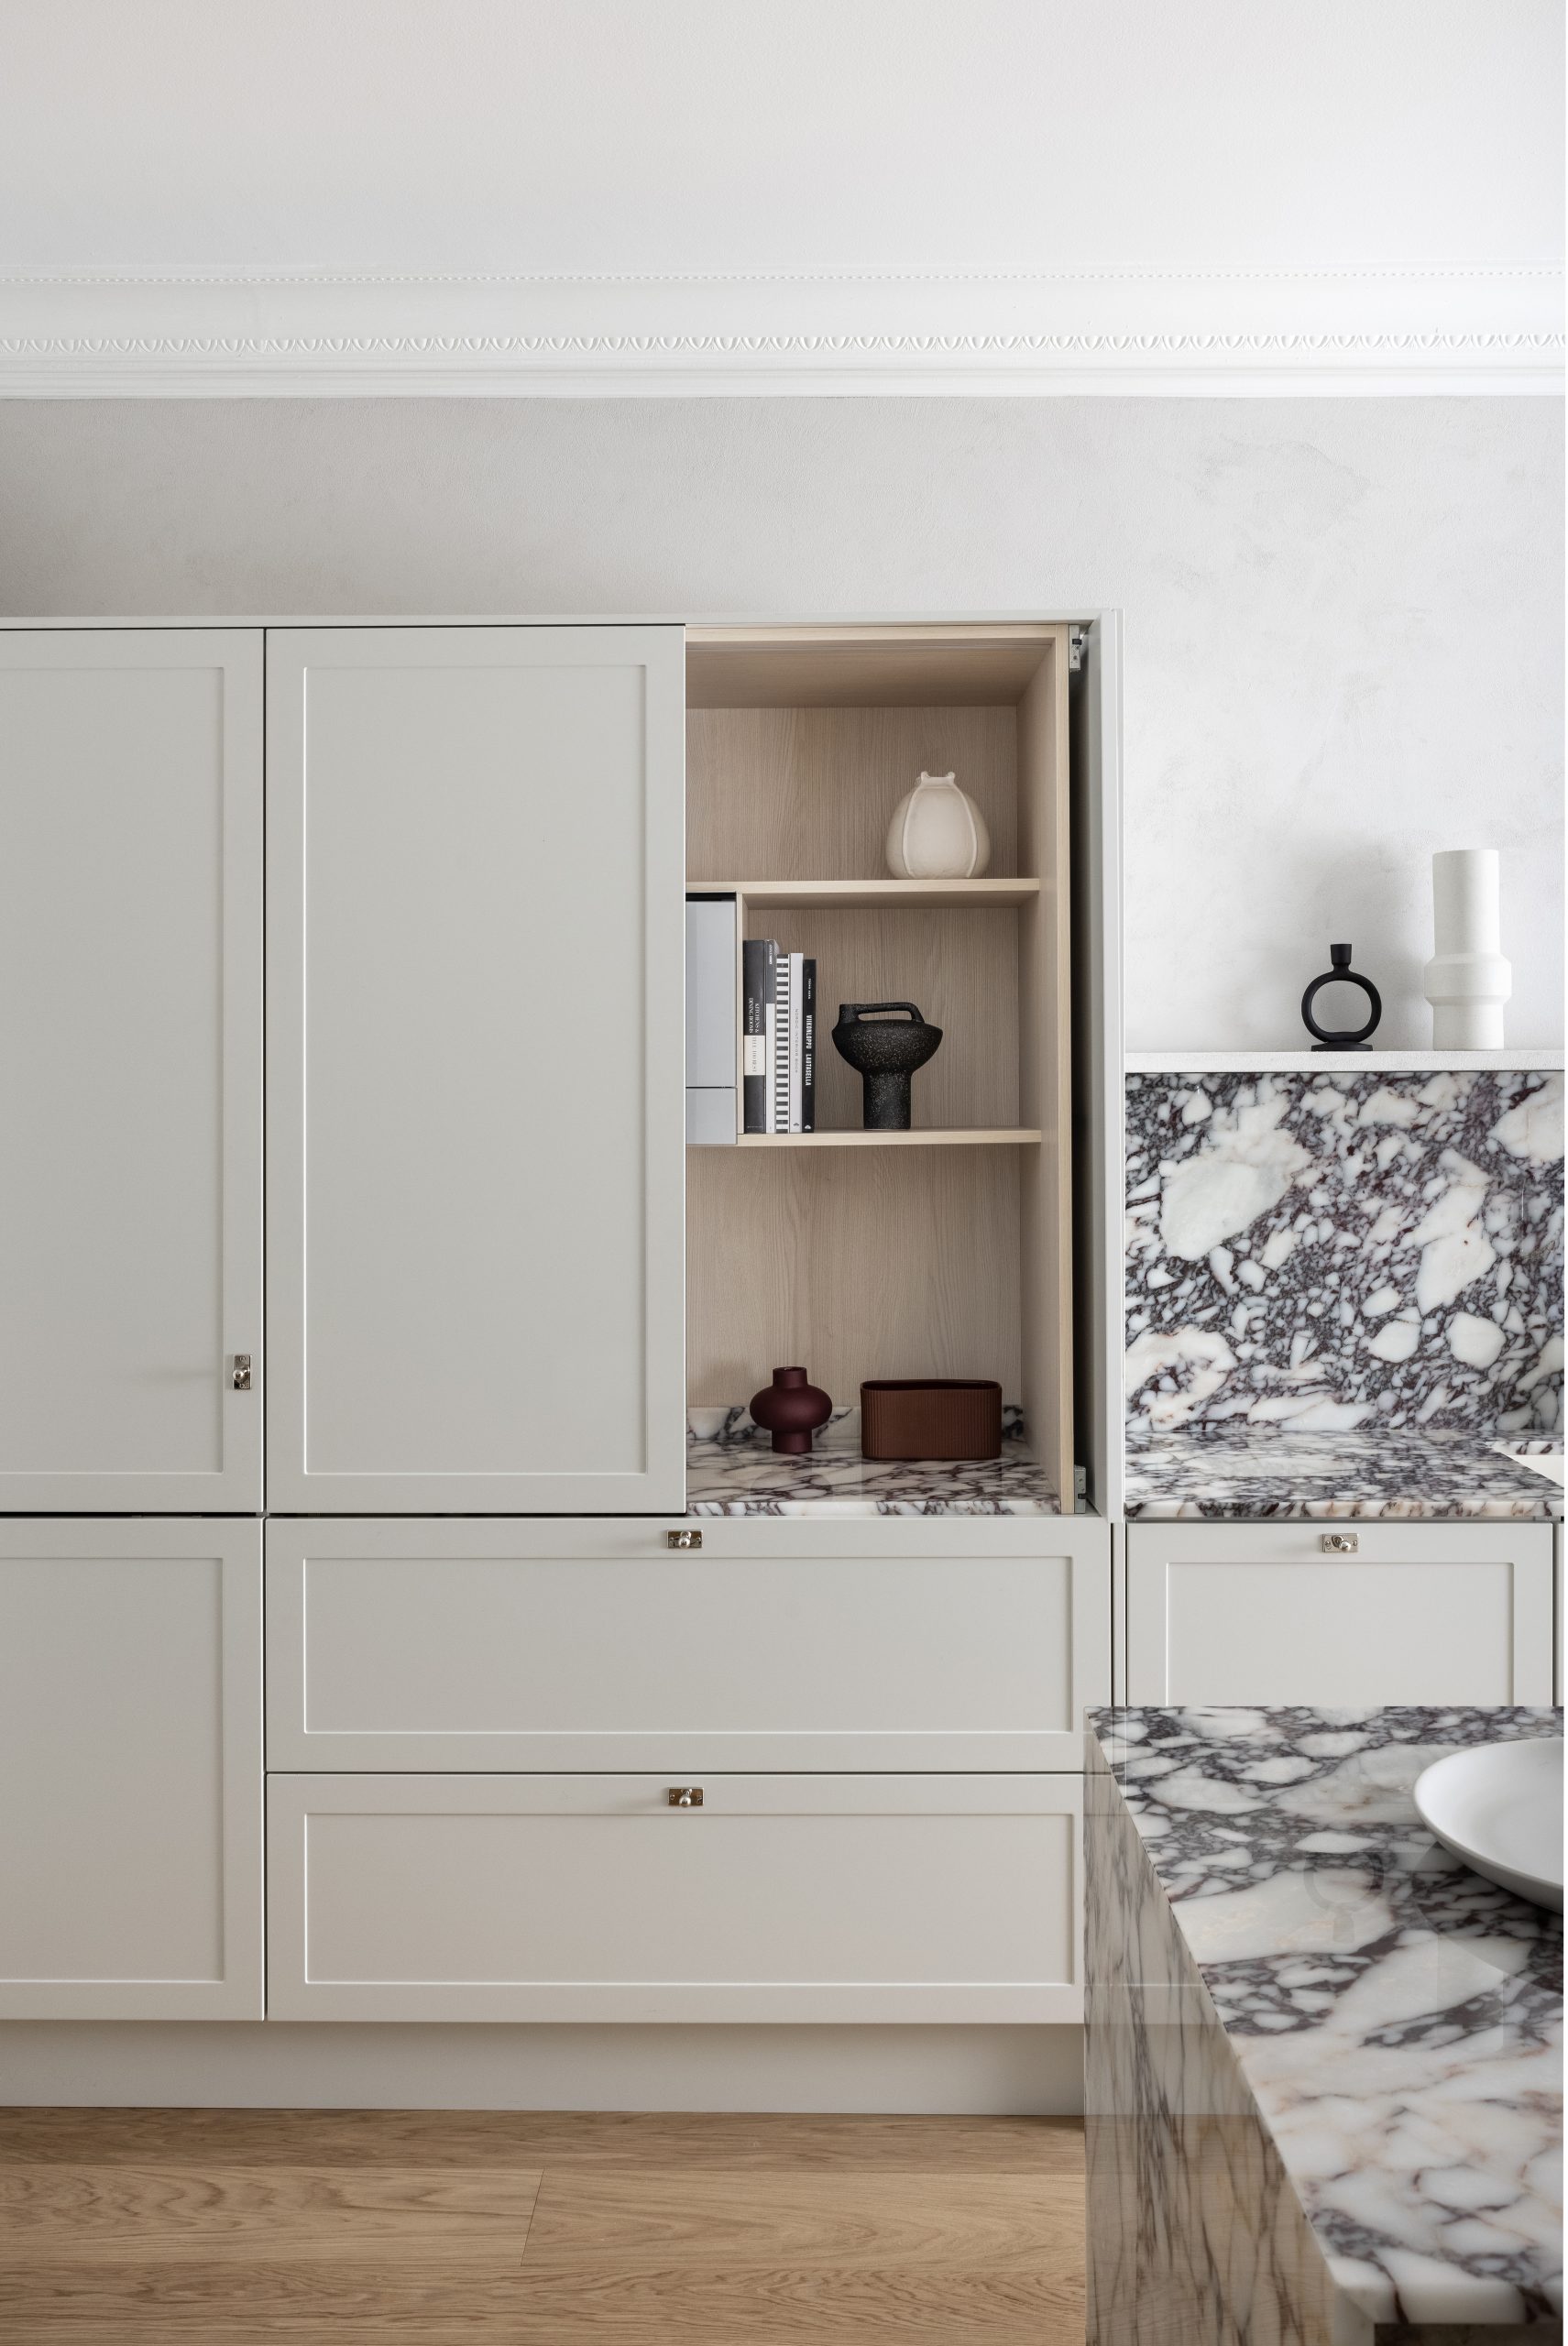 Blaun Helsingin TÃ¶Ã¶lÃ¶ssÃ¤ sijaitsevan keittiÃ¶myymÃ¤lÃ¤n esittely keittiÃ¶ Calacatta Viola marmorilla ja tammi aamiaskaapilla.